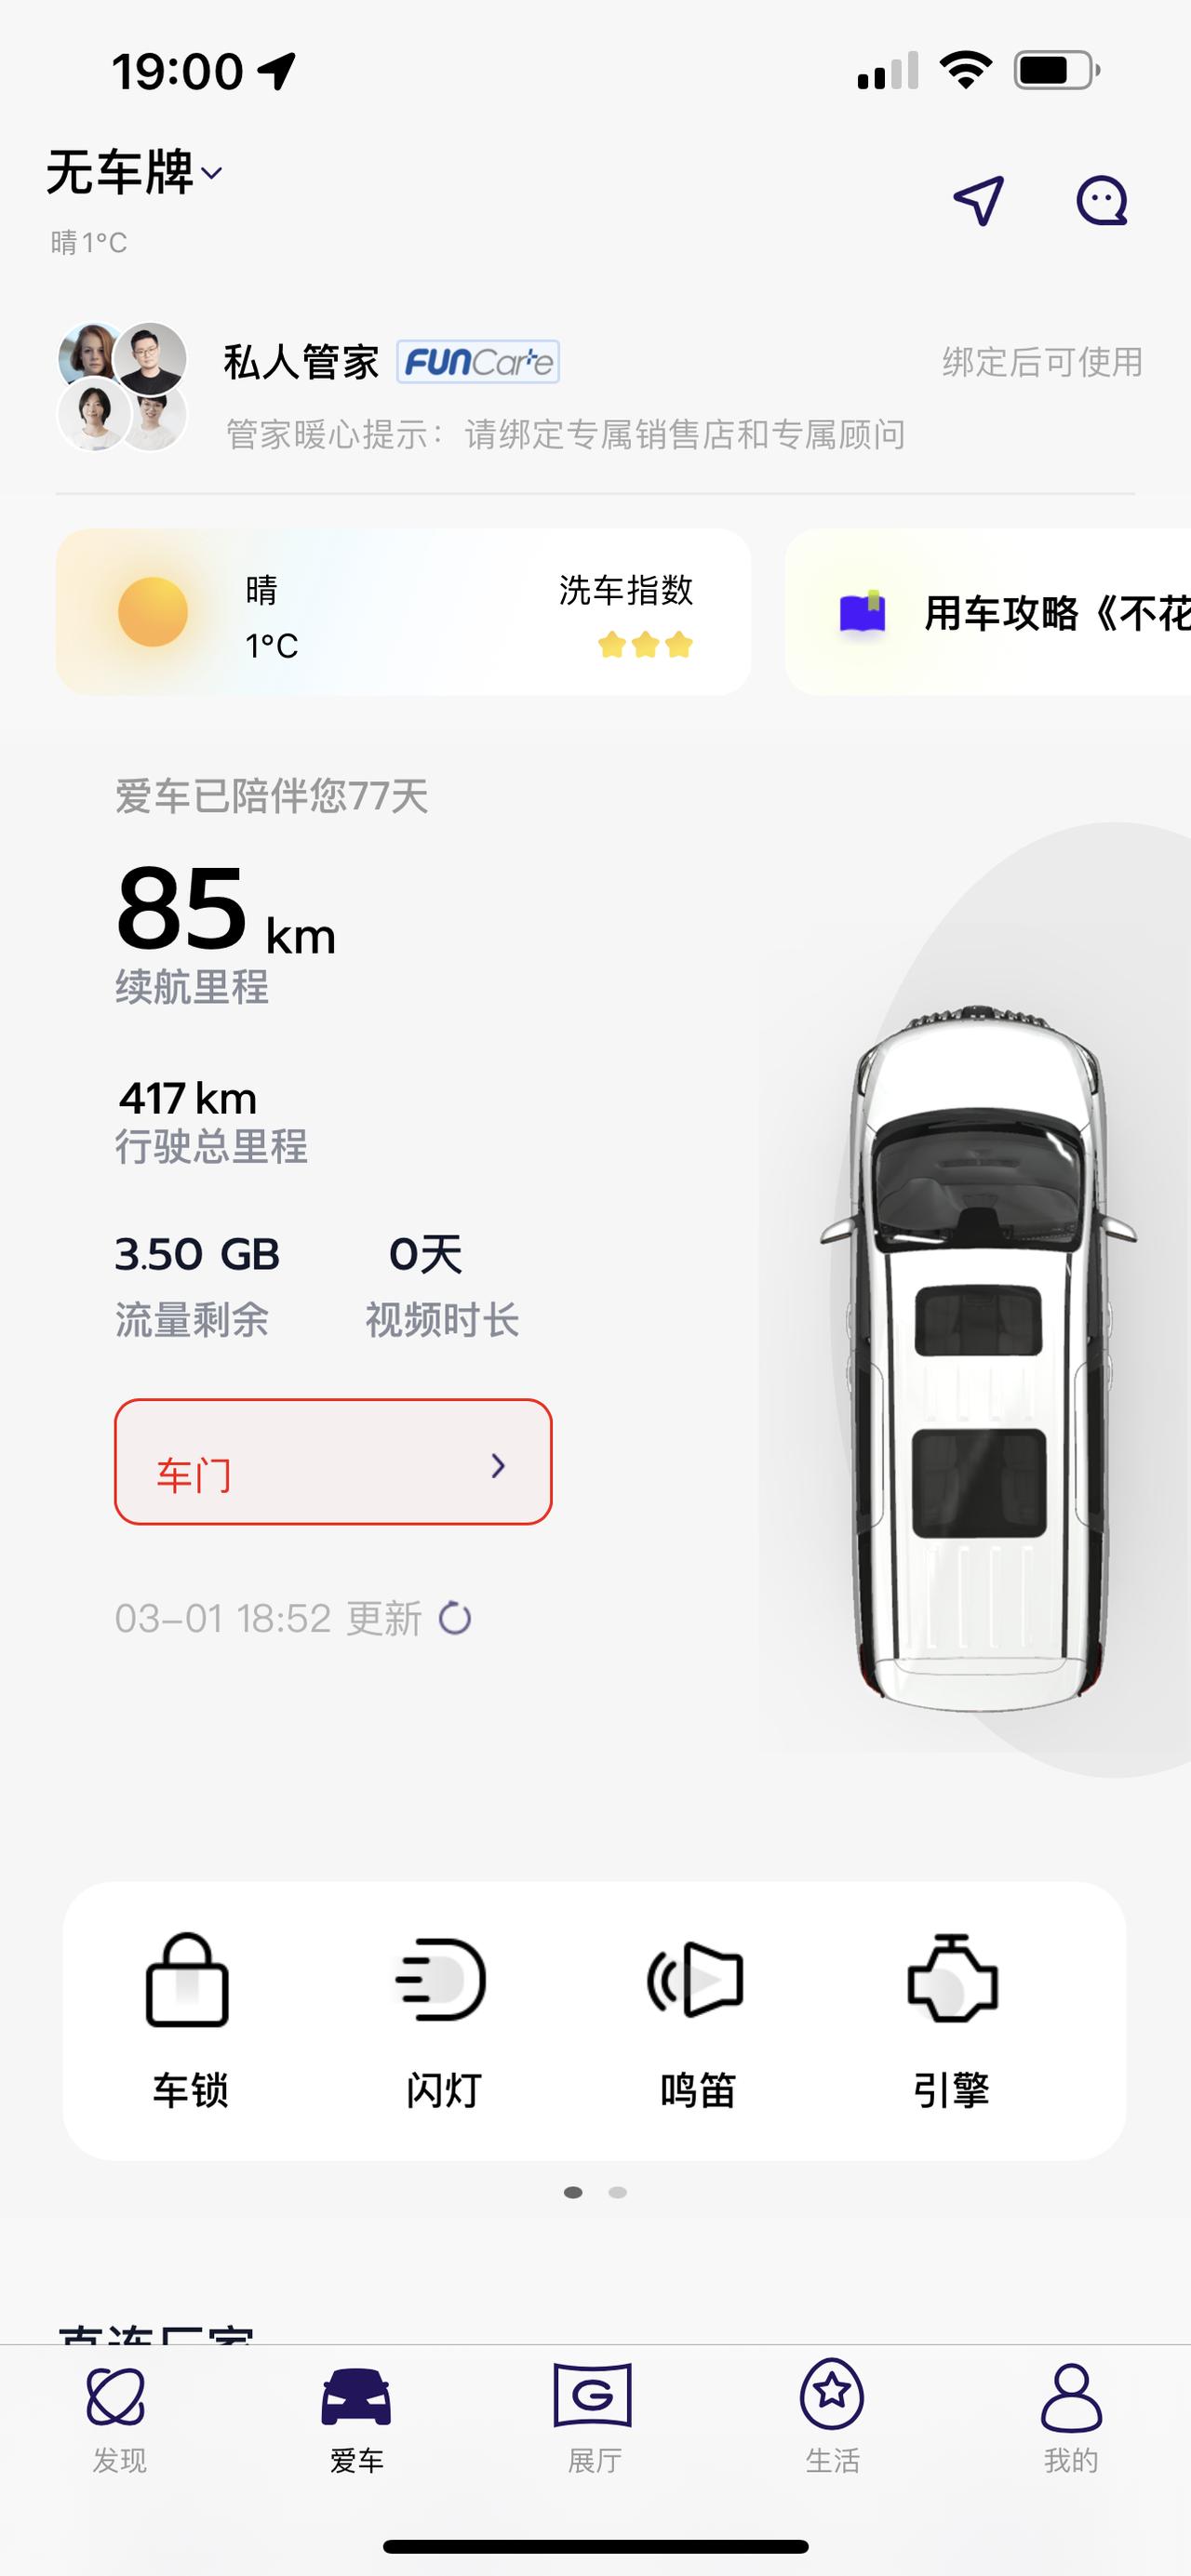 广汽传祺传祺M8 app上的车牌号如何添加